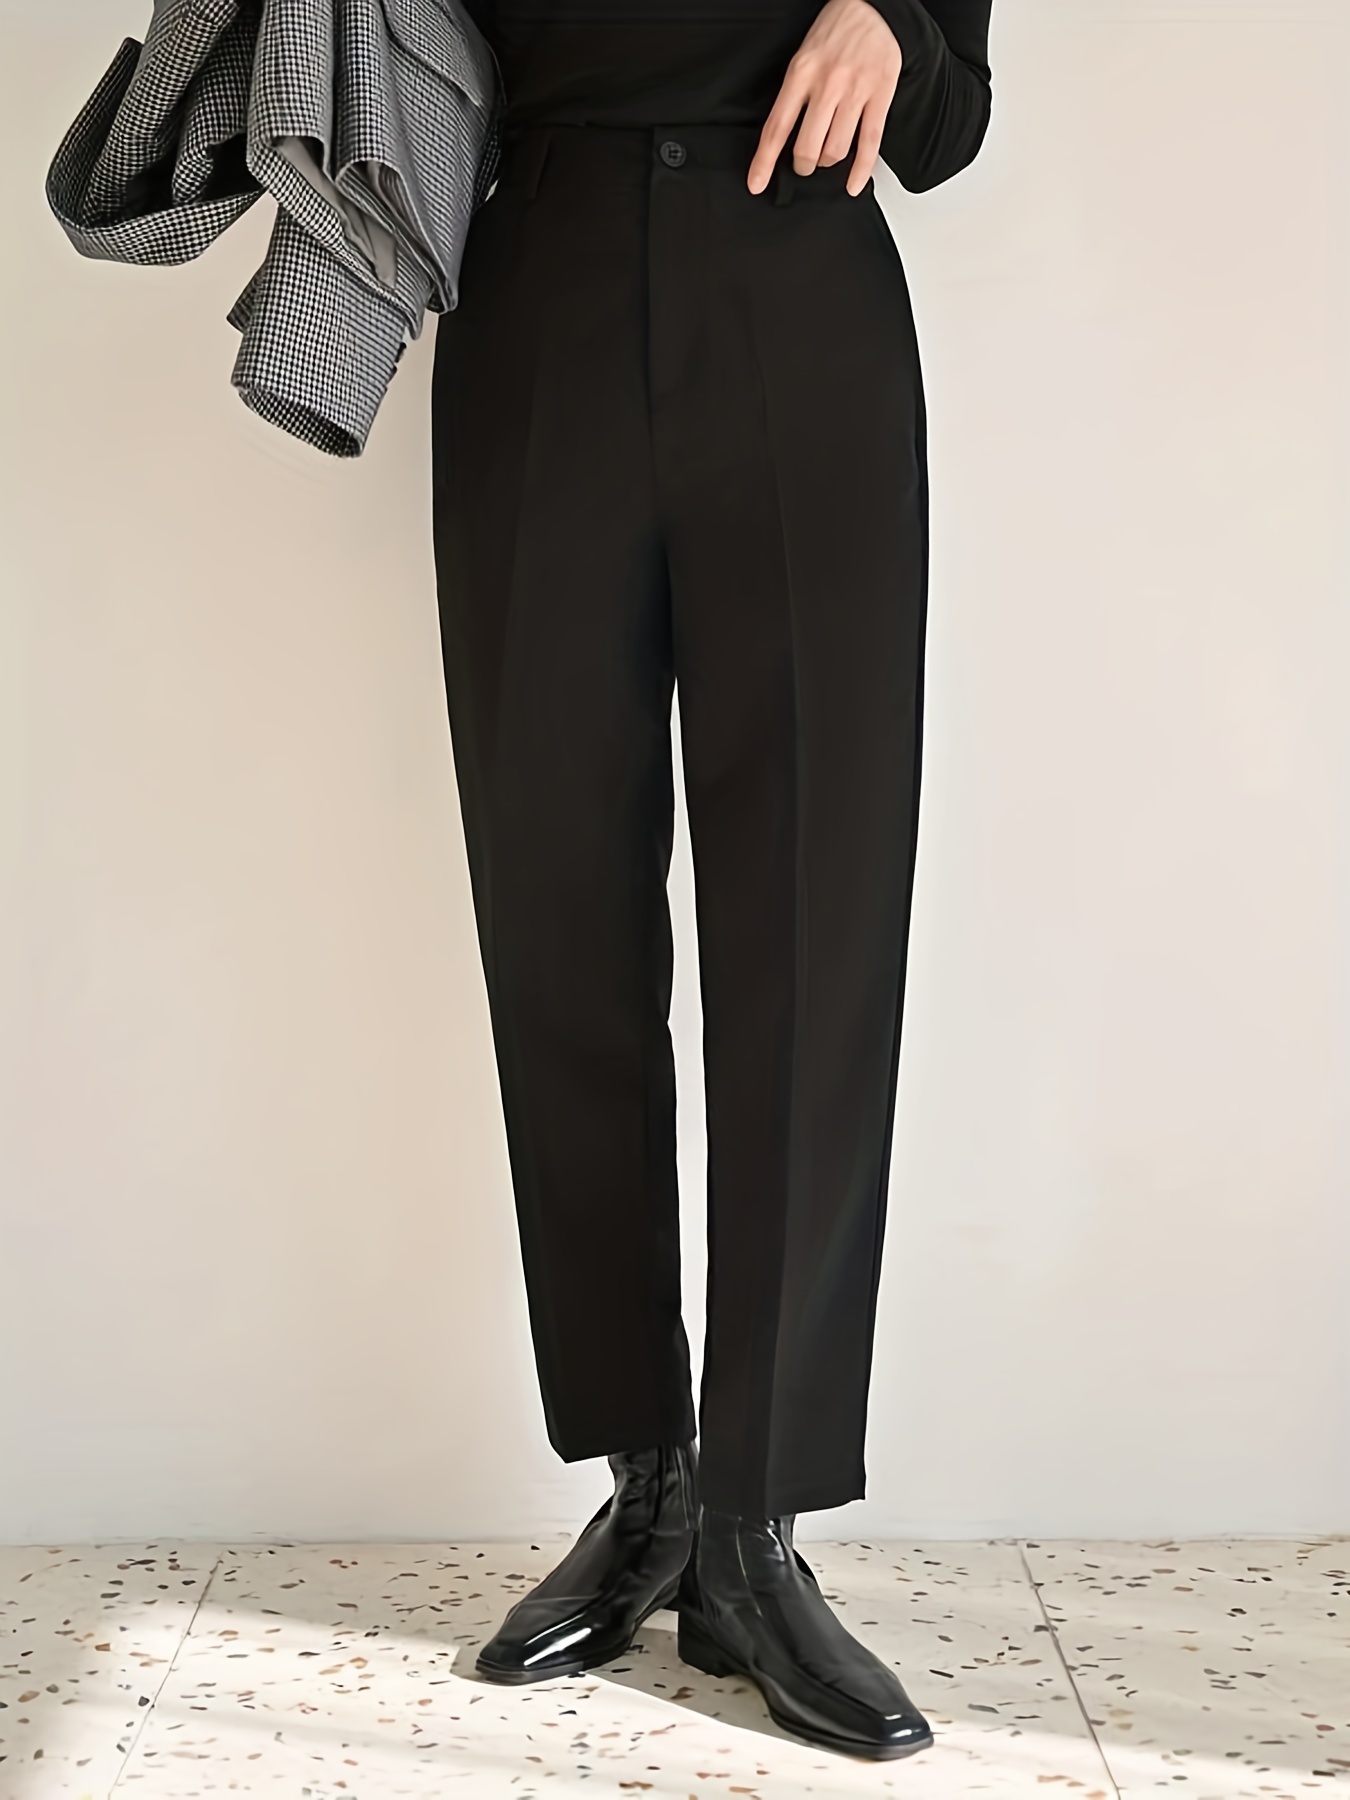 Pantalones formales de oficina para mujer, pantalones de trabajo